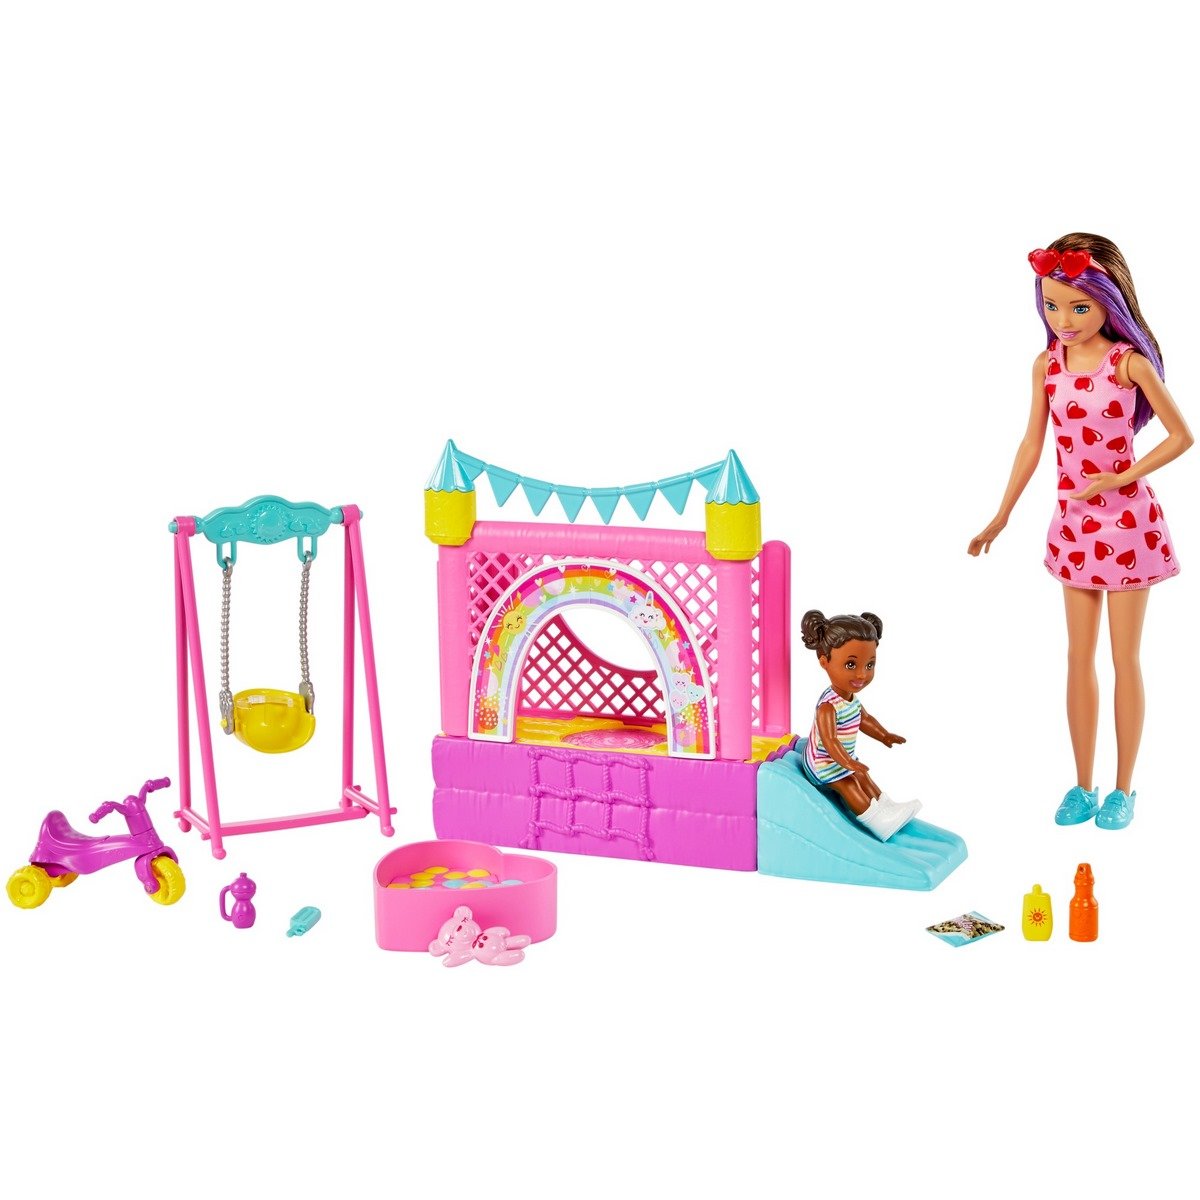 Coffret Barbie Skipper Babysitter Mattel avec poussette - Poupée